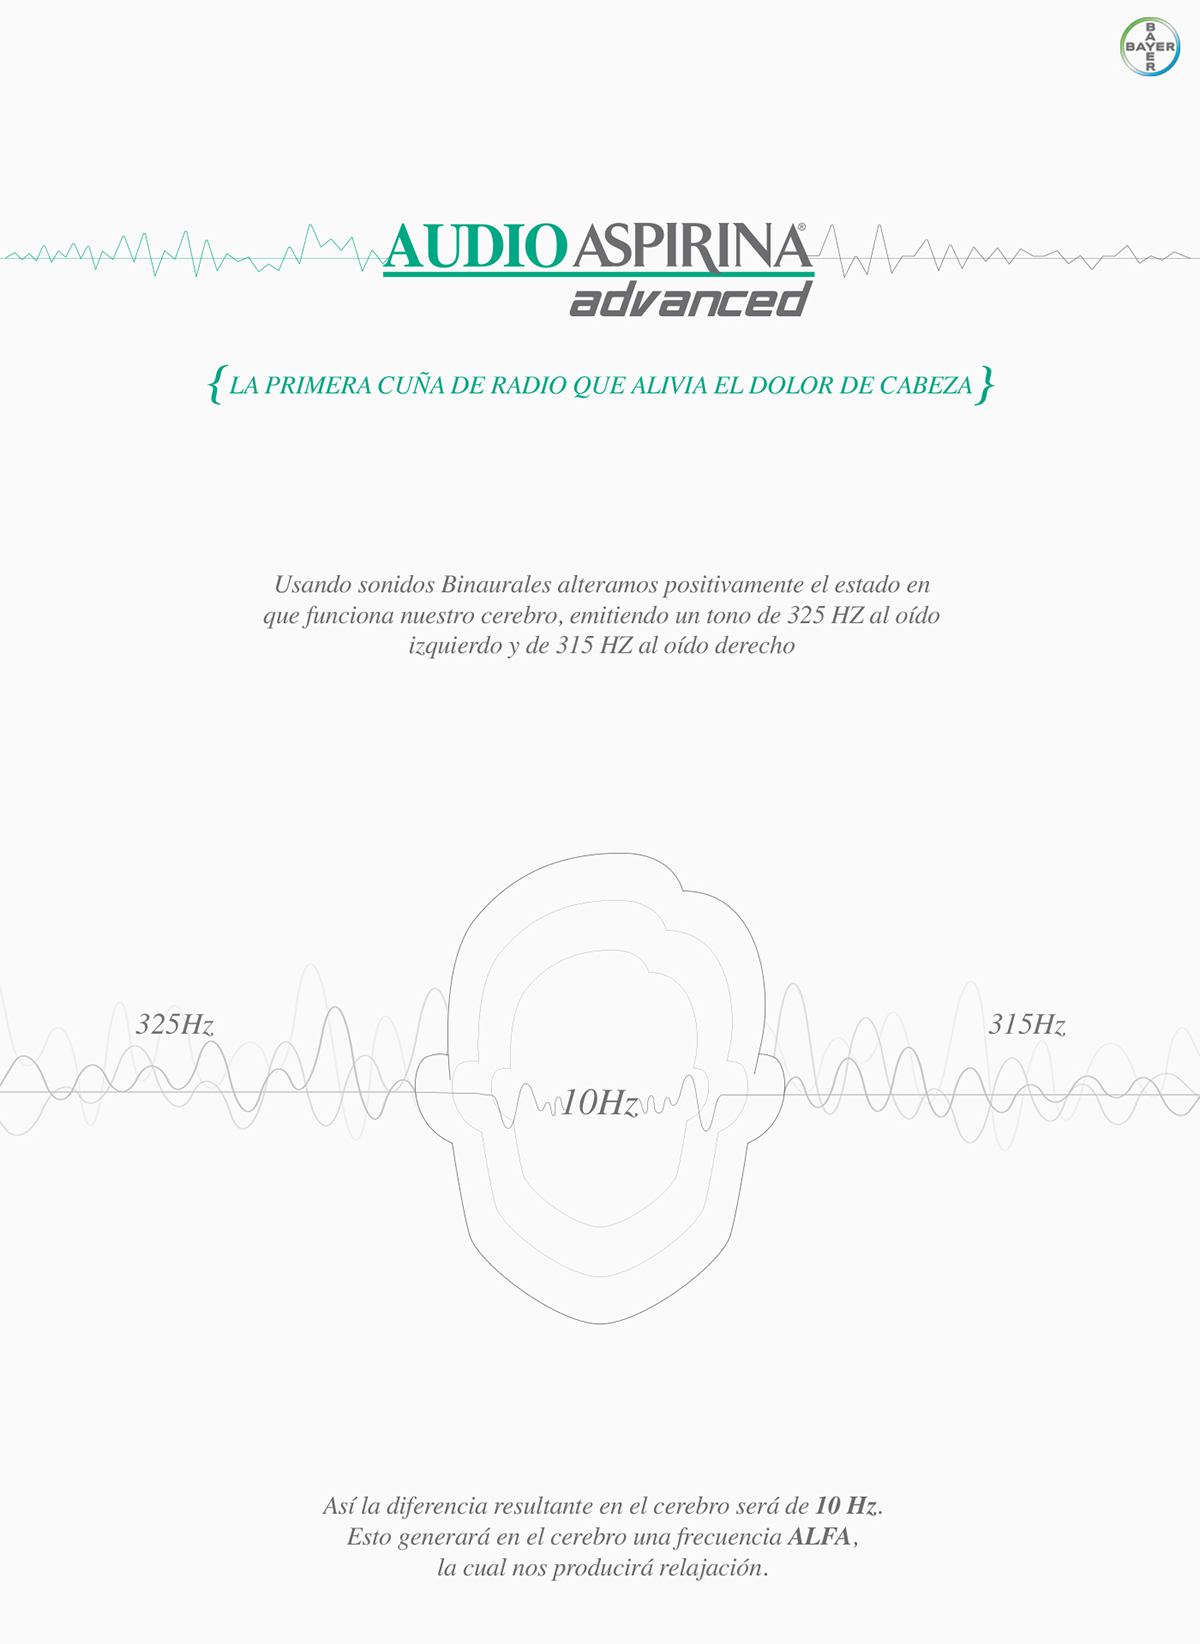 Bayer Audio Aspirina Dolor de cabeza headache cabeza aspirina Aspirina Advanced cuña cuña de raio radio ads Aspirina radio Aspirina cuña Bayer cuñas Headache ad